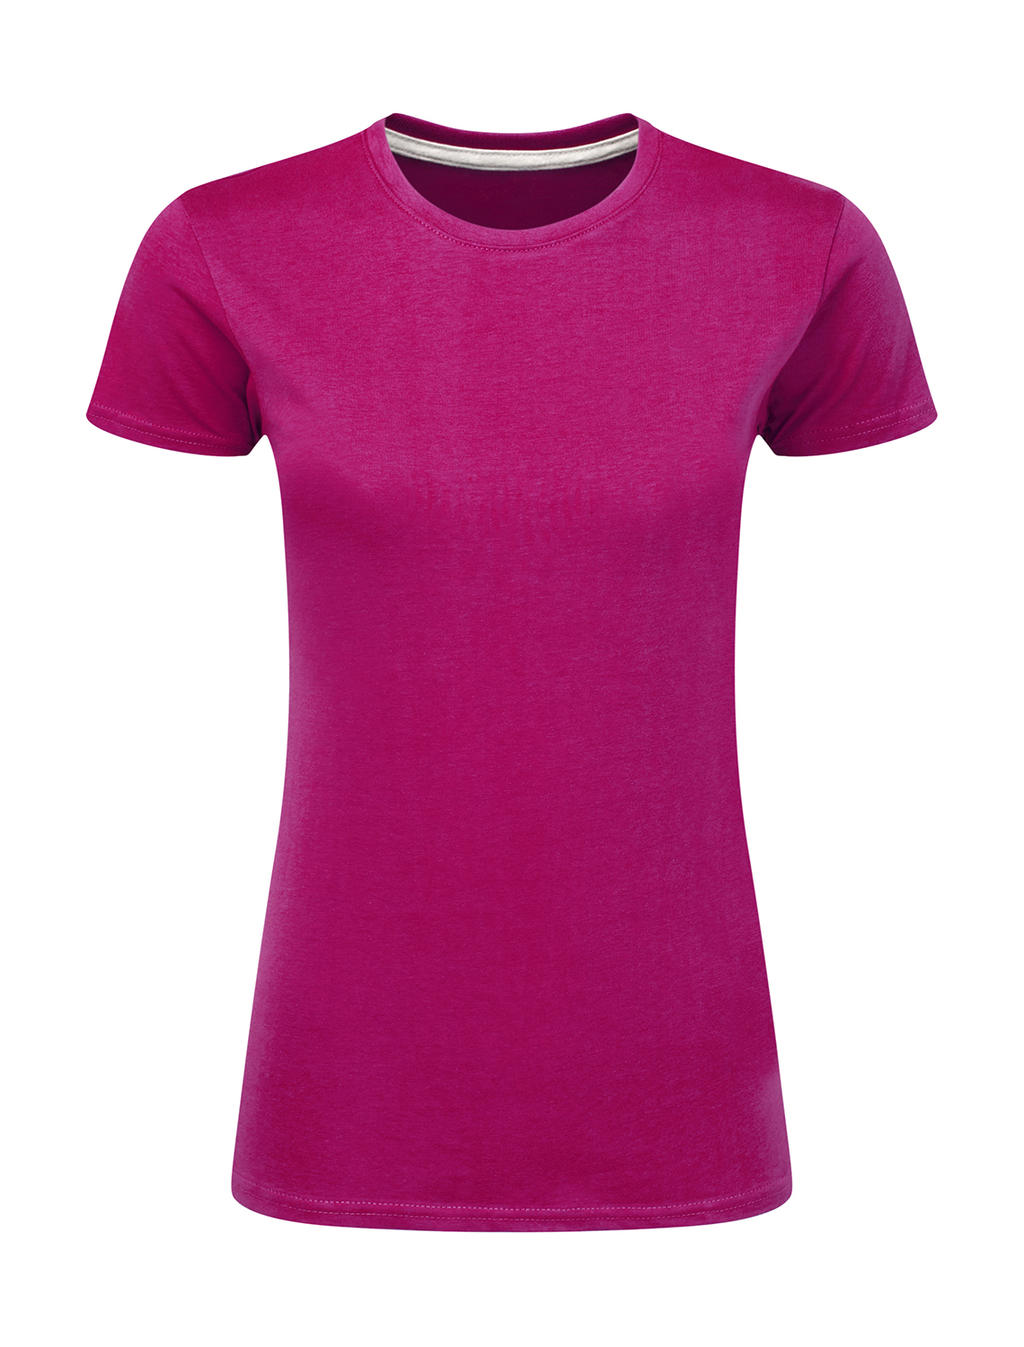 Dokonale potlačiteľné dámske tričko bez štítku - dark pink